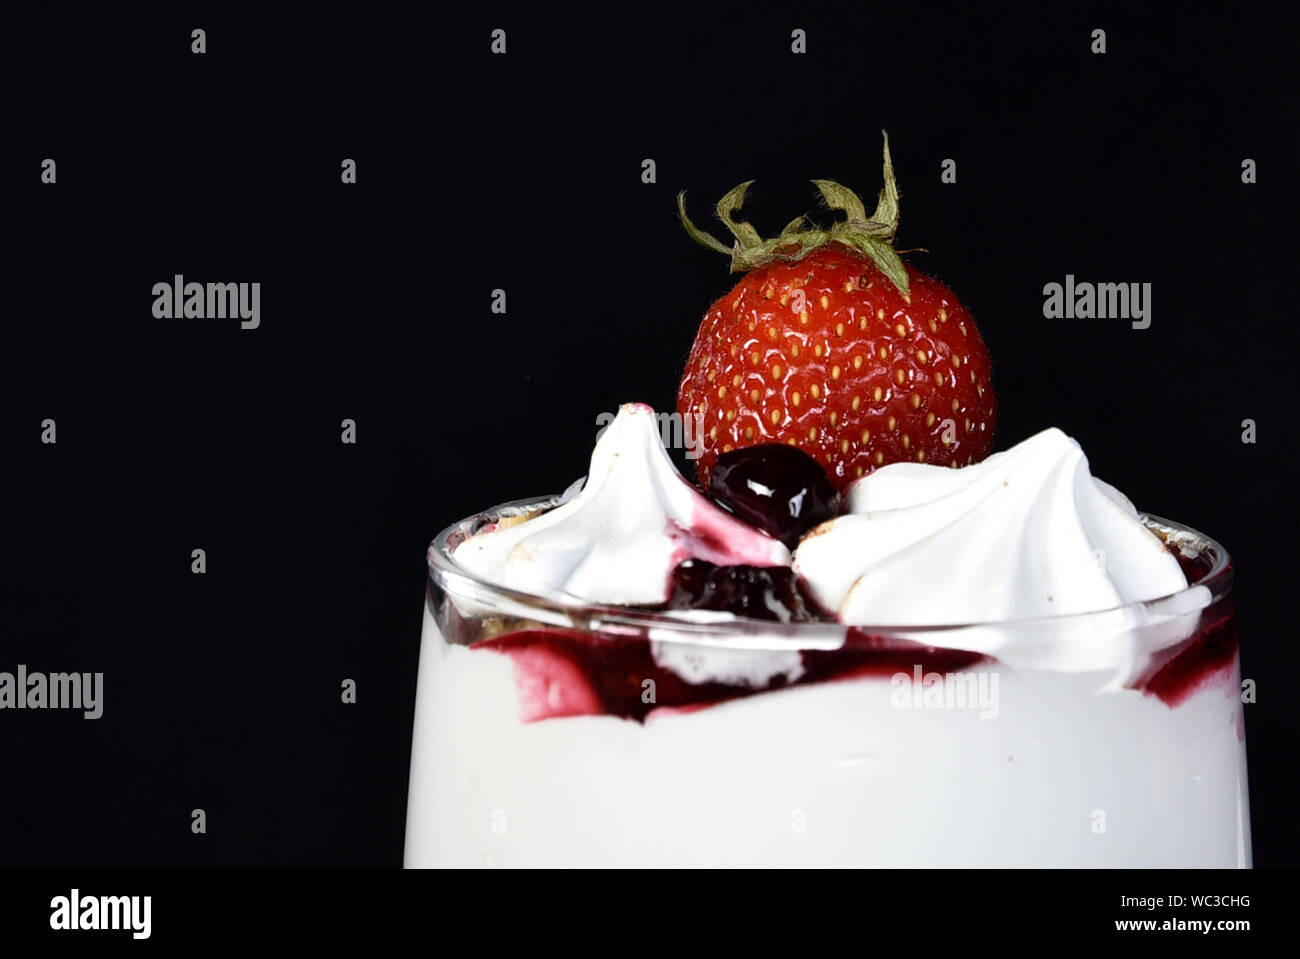 Süße nachspeise Eis in der Schüssel mit Erdbeeren Obst auf schwarzem Hintergrund. Stockfoto